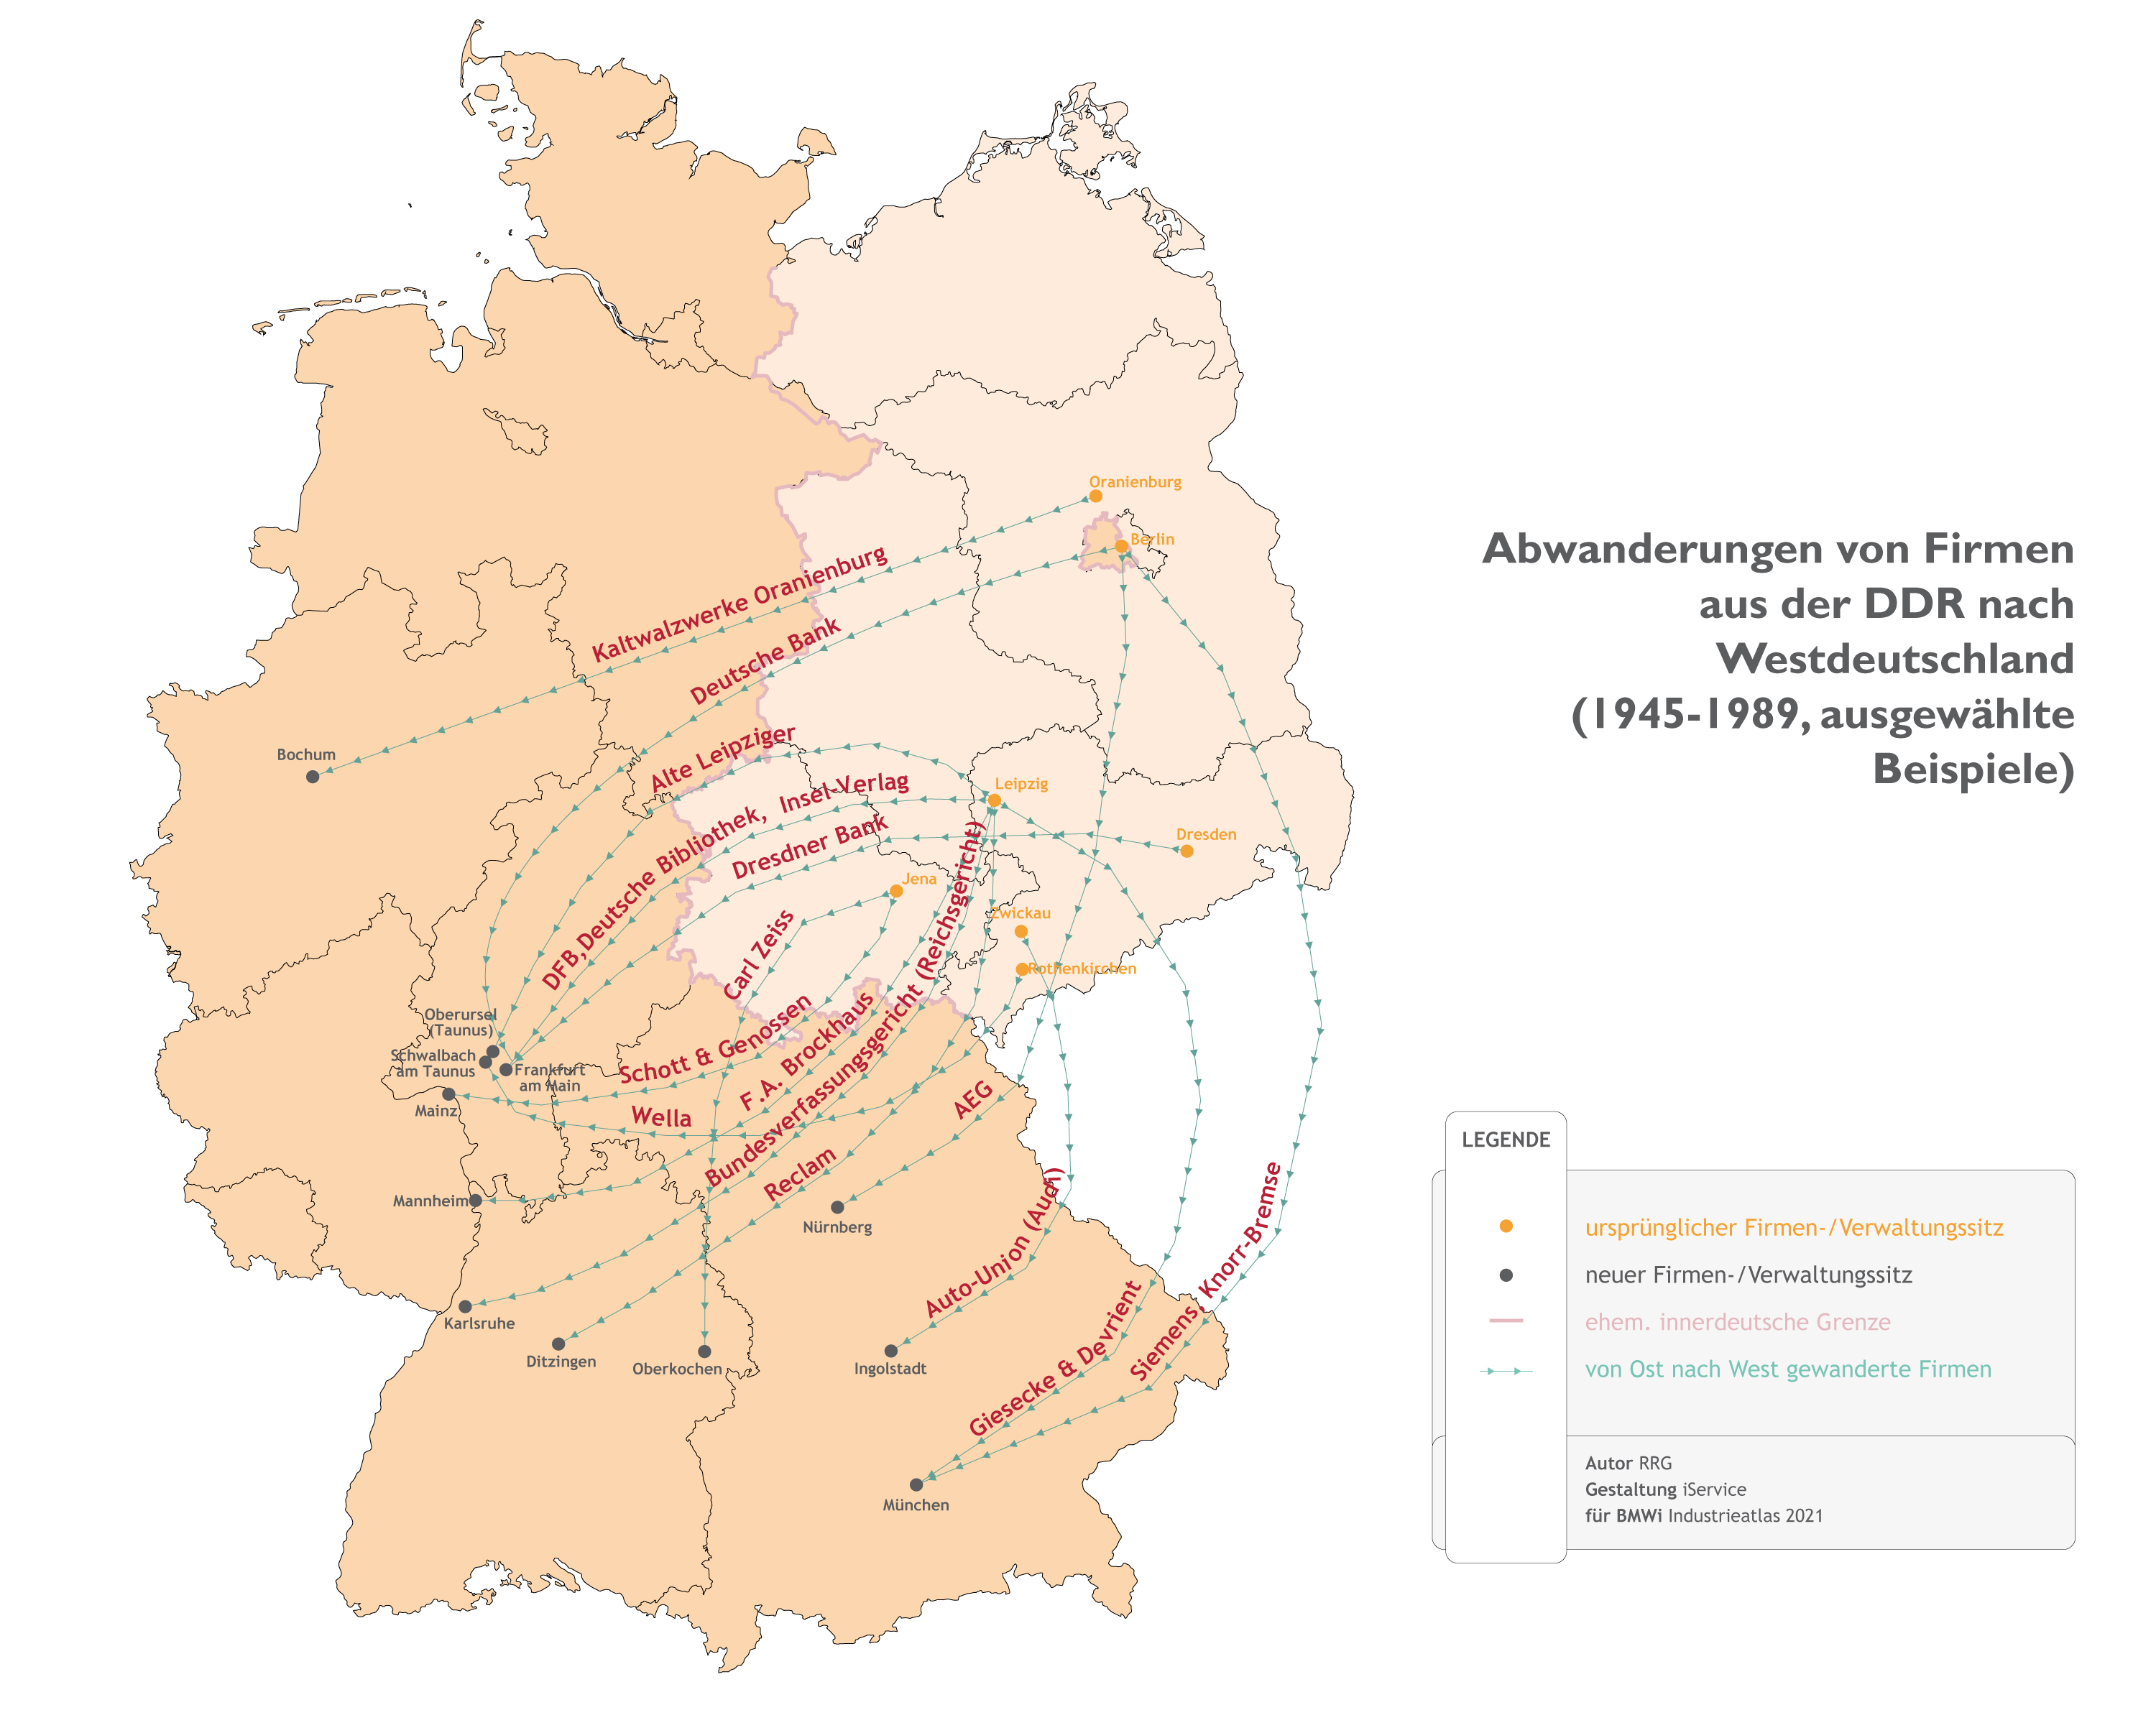 Abwanderungen der Firmen aus der DDR nach Westdeutschland (1945-1989, ausgewählte Beispiele)